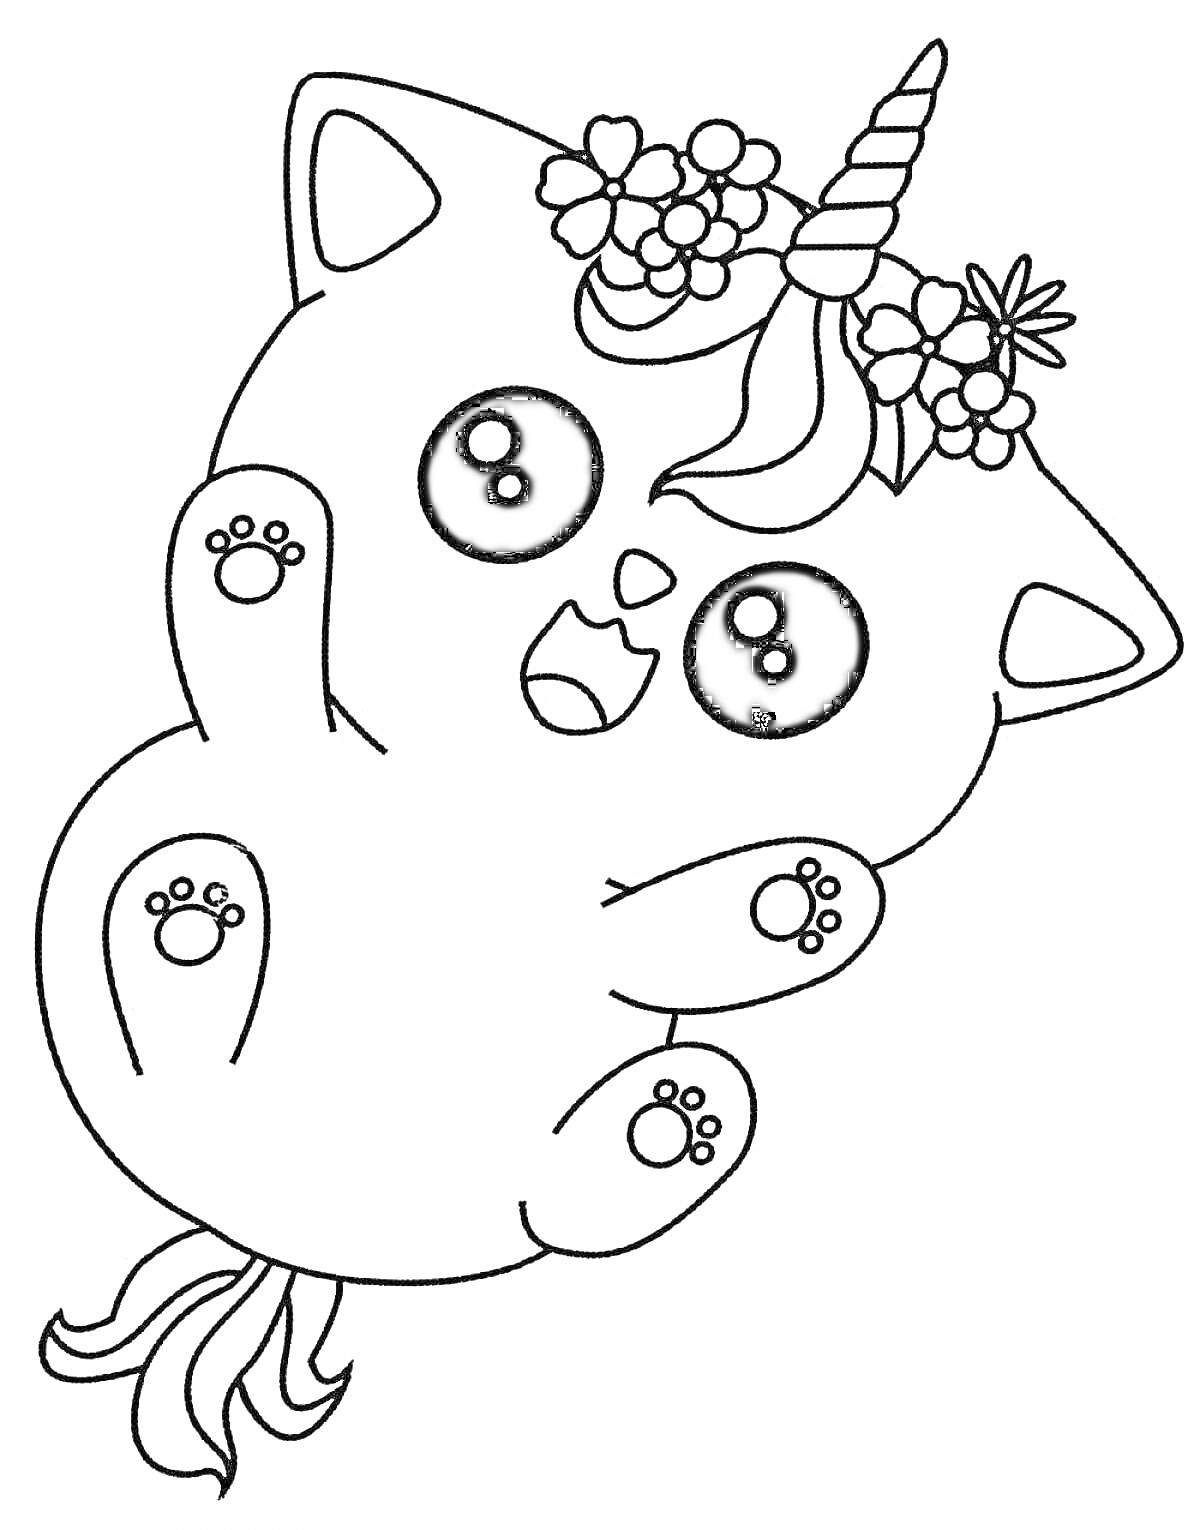 Раскраска кот-единорог с большими глазами, цветочным венком и хвостом русалки